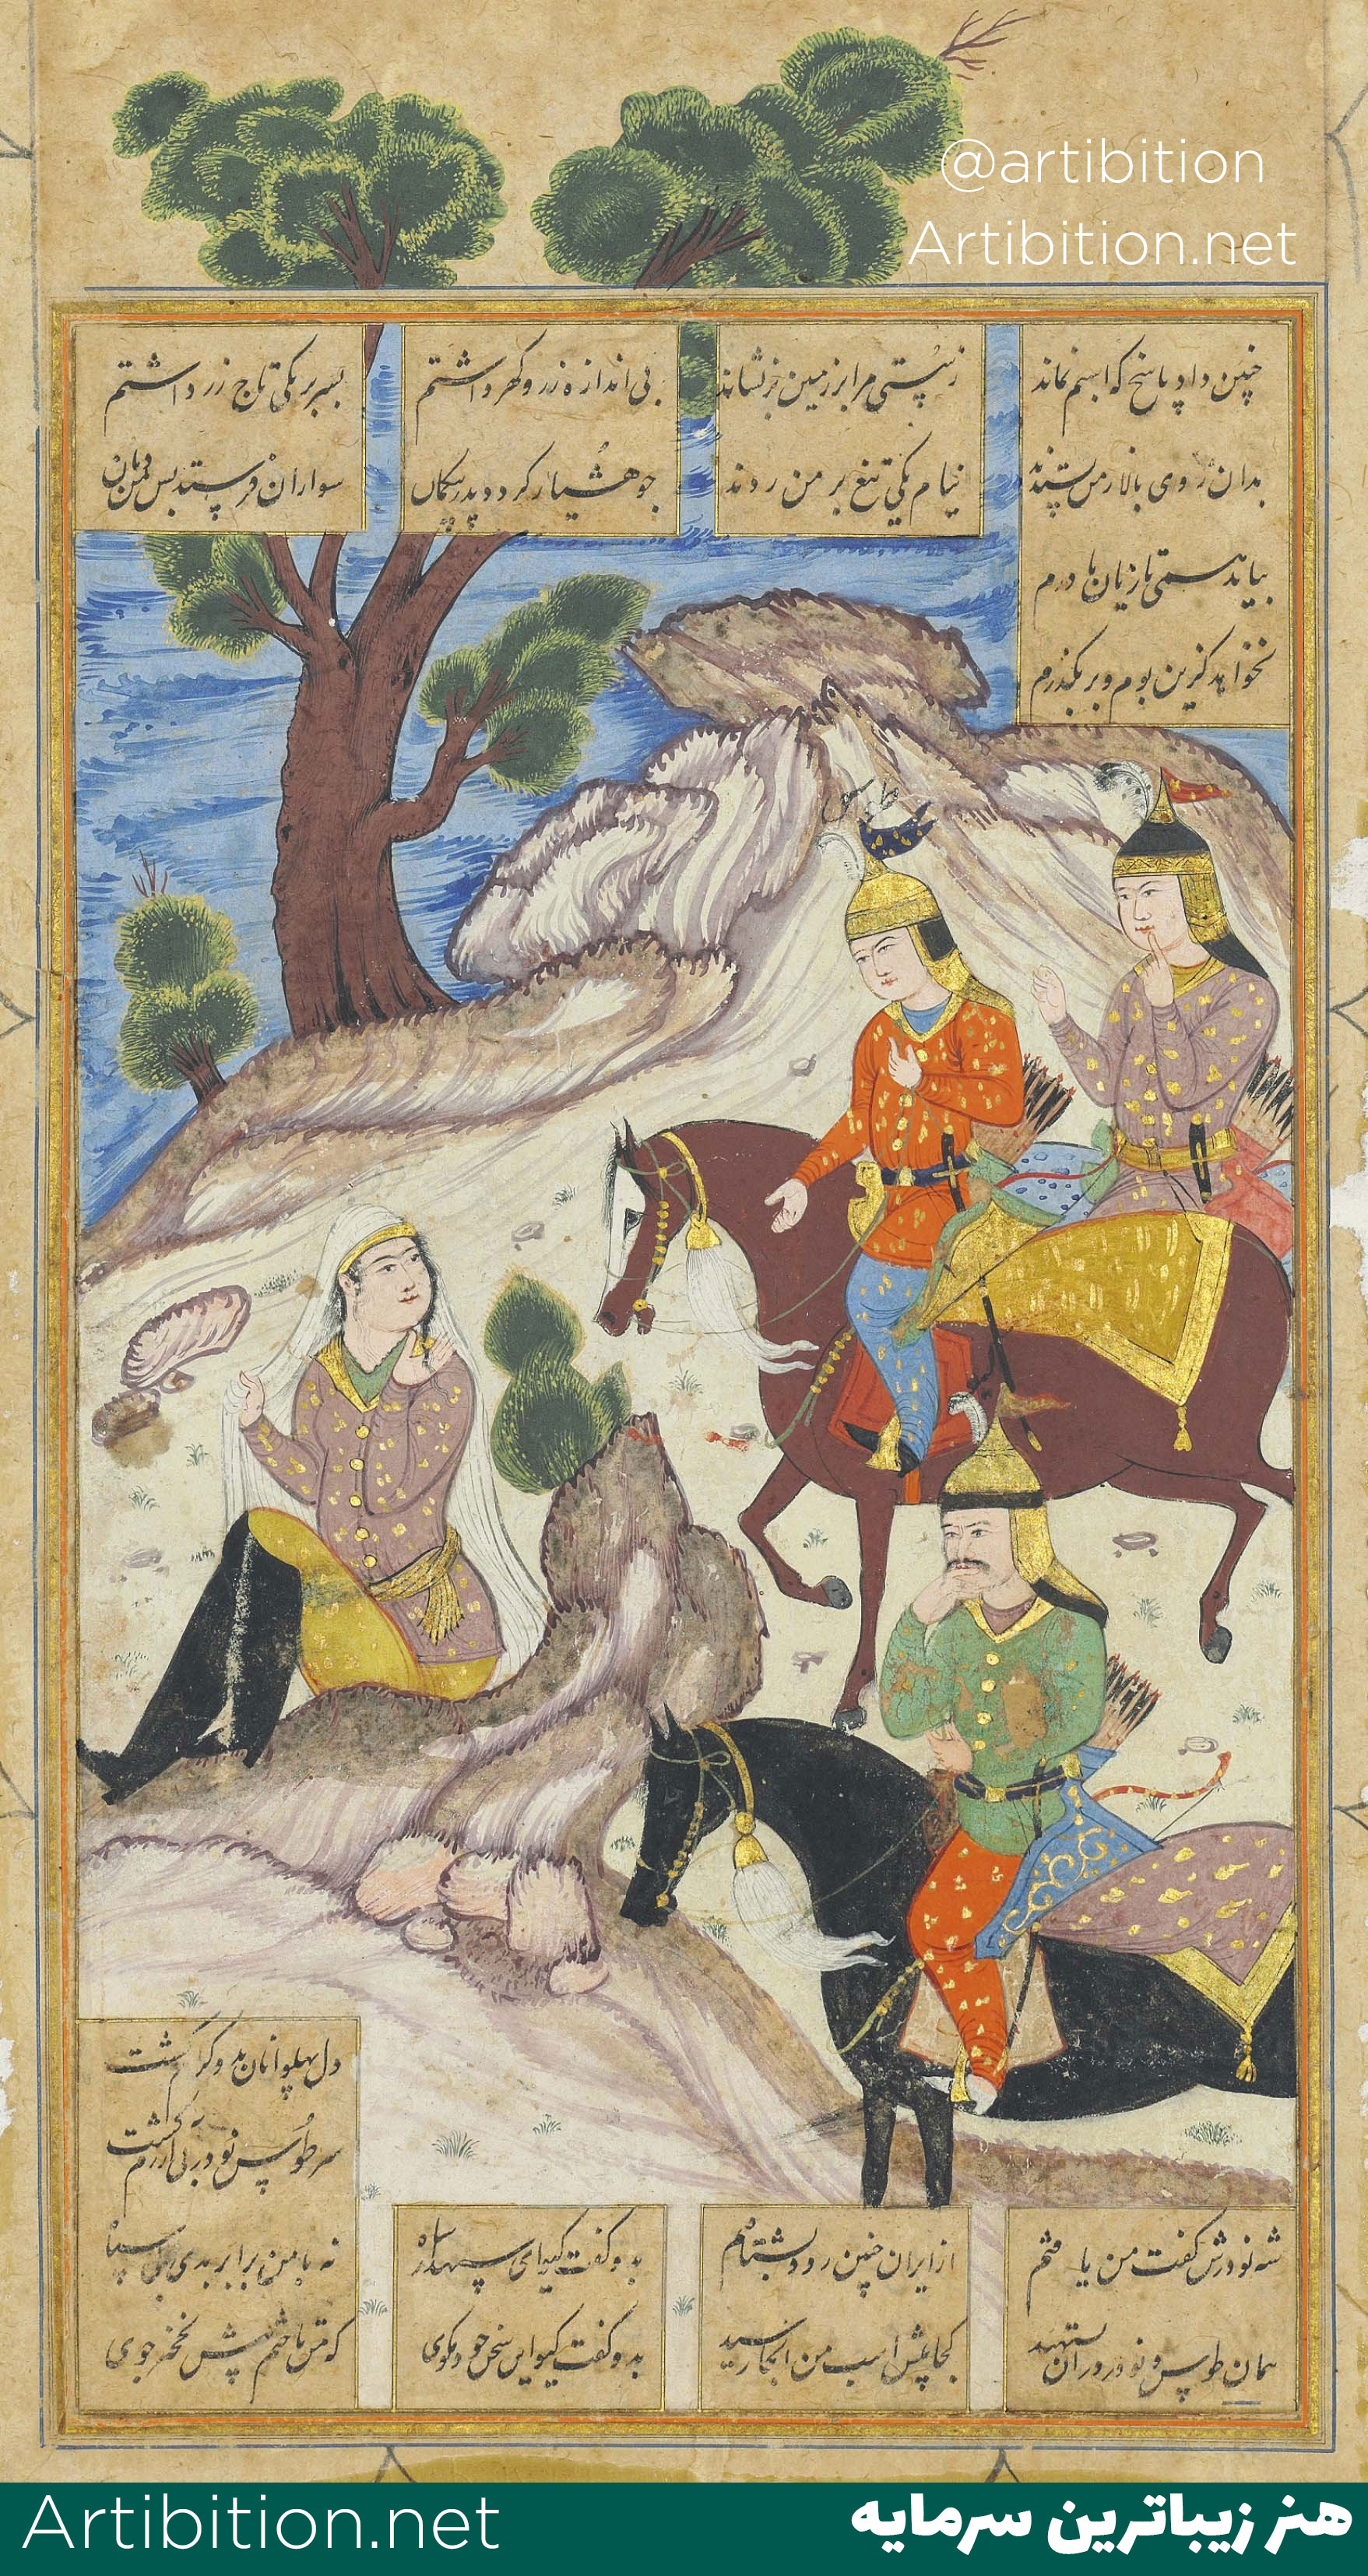  مینیاتور معین مصور( طوس و گودرز در جنگل) ایران دوره صفوی قرن 17